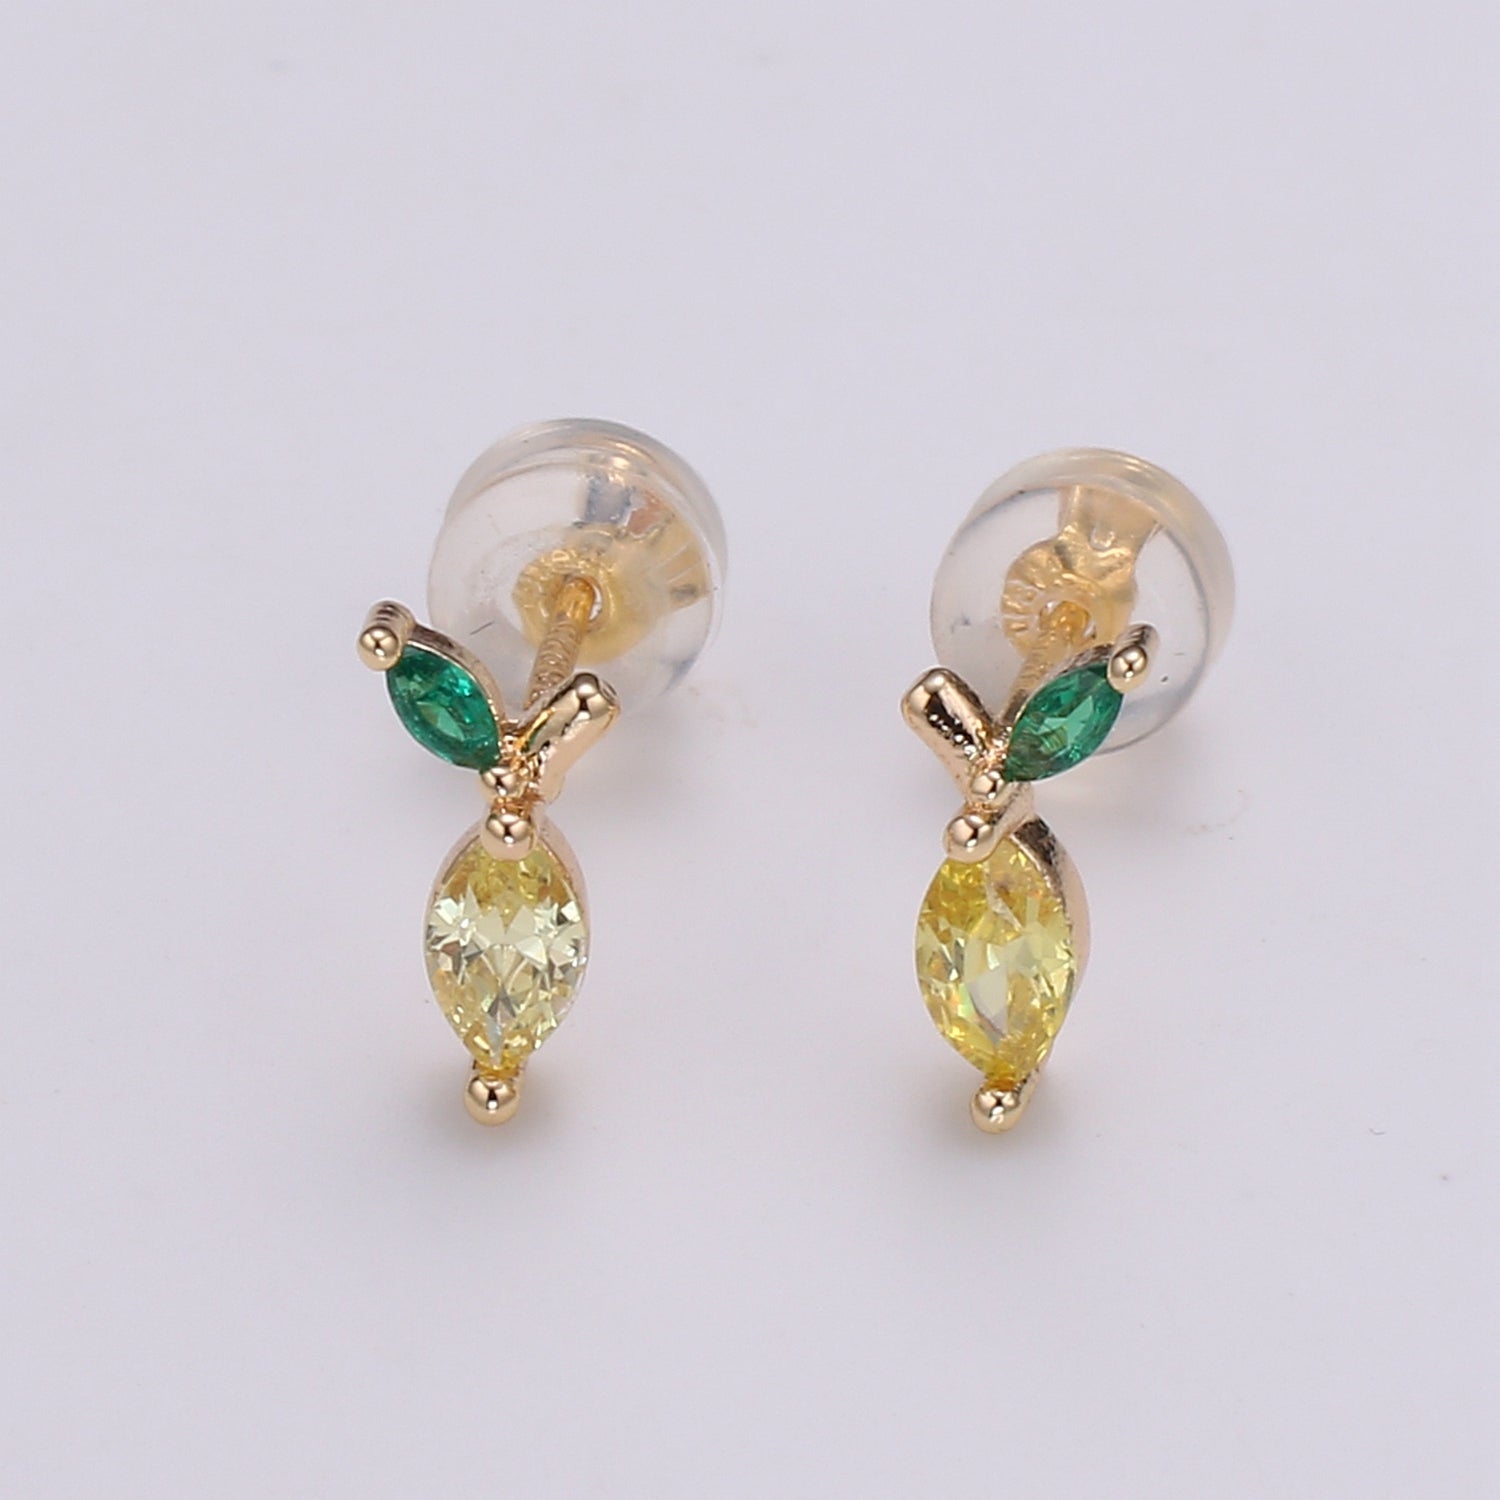 Gold Lemon Stud Earring, Crystal Lemon Studs, Lemon Fruit Earring, Minimalist Earring, Dainty Earrings for Girls, Gift - DLUXCA